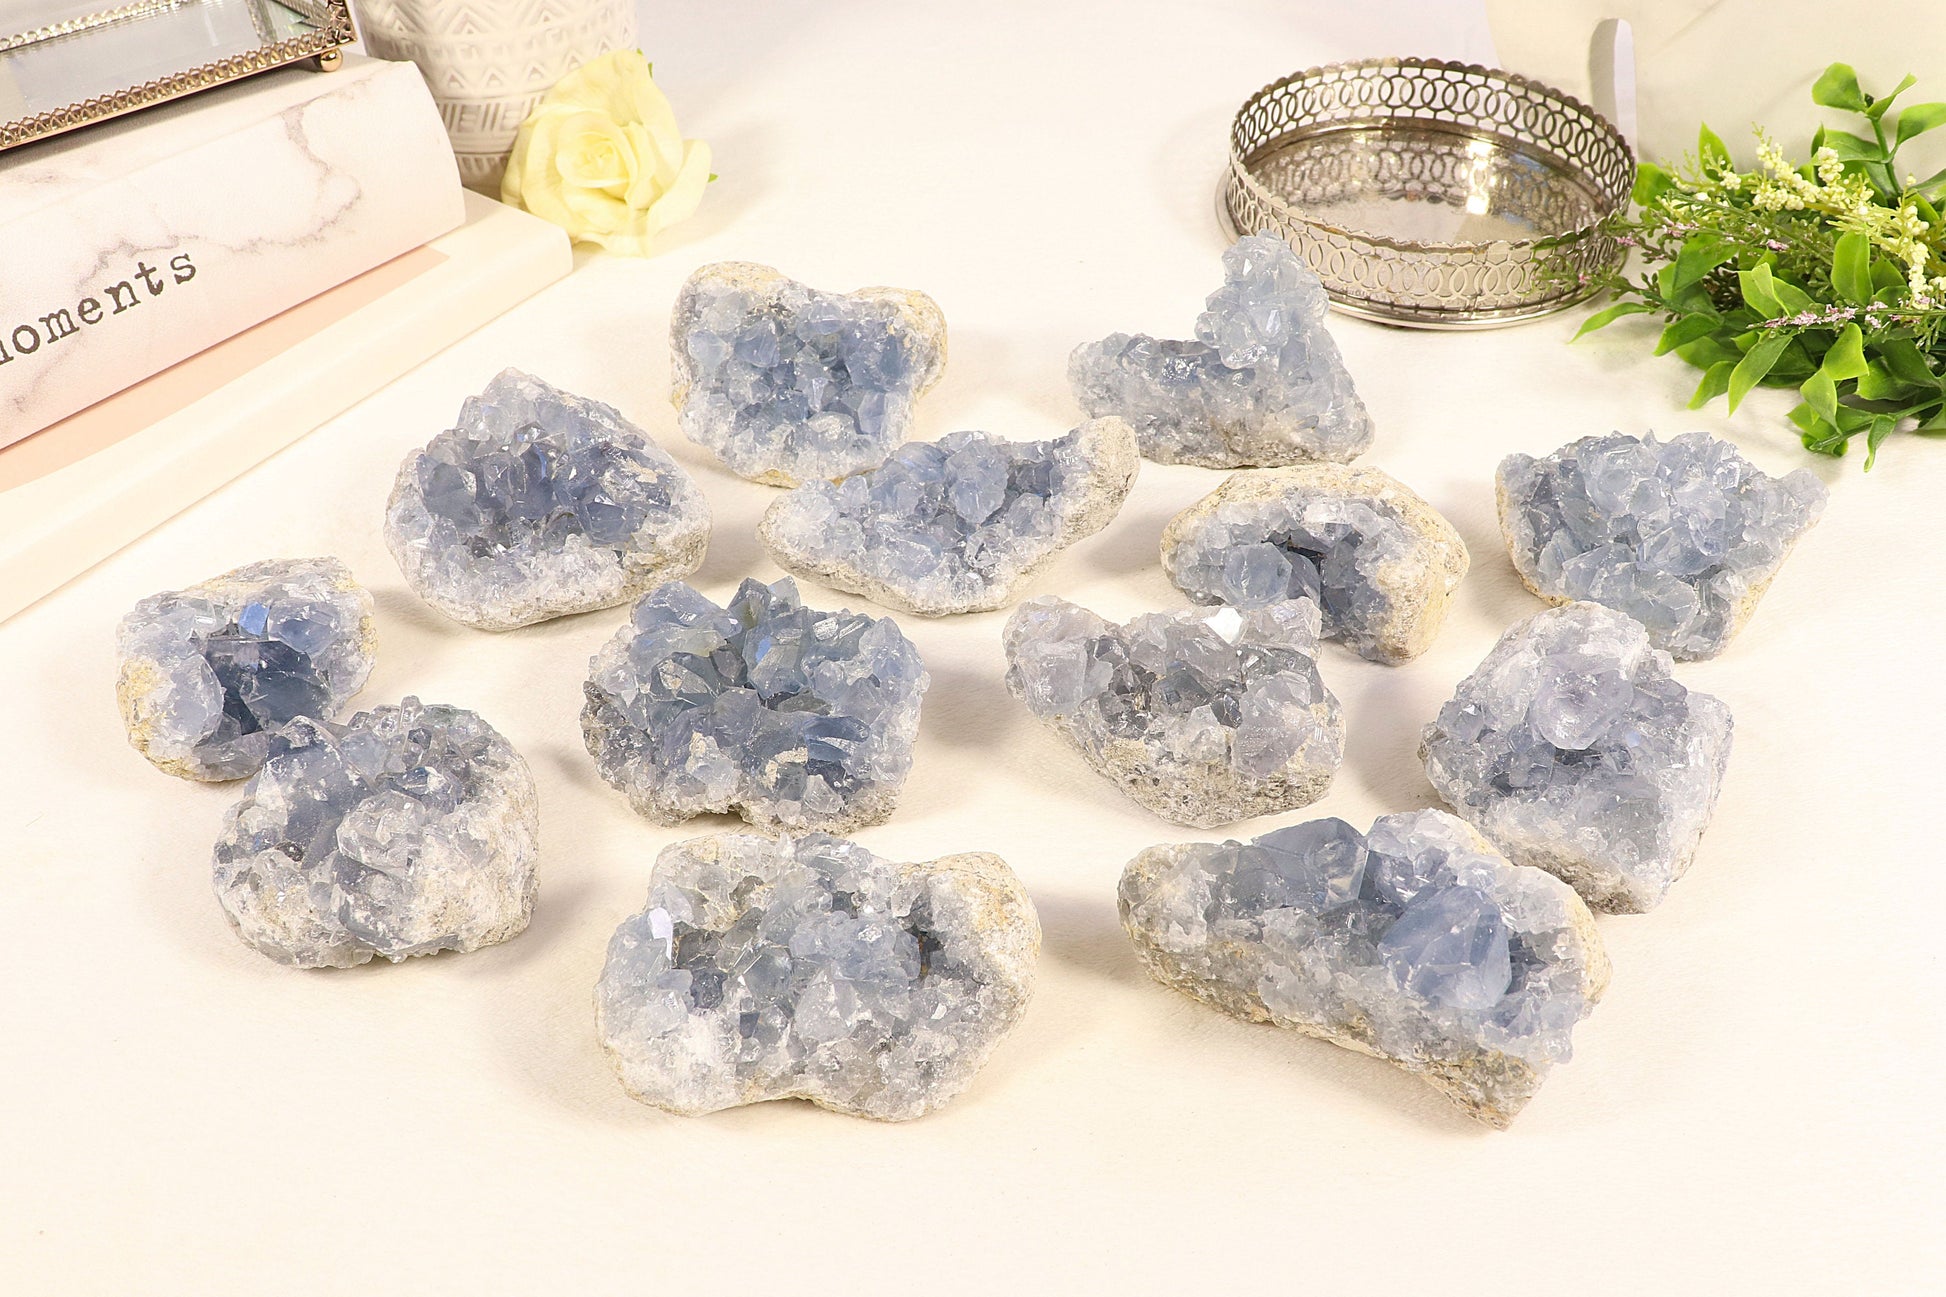 Natural Blue Celestite Geode, Celestite Crystal Cluster, Celestite Raw Crystals for Healing